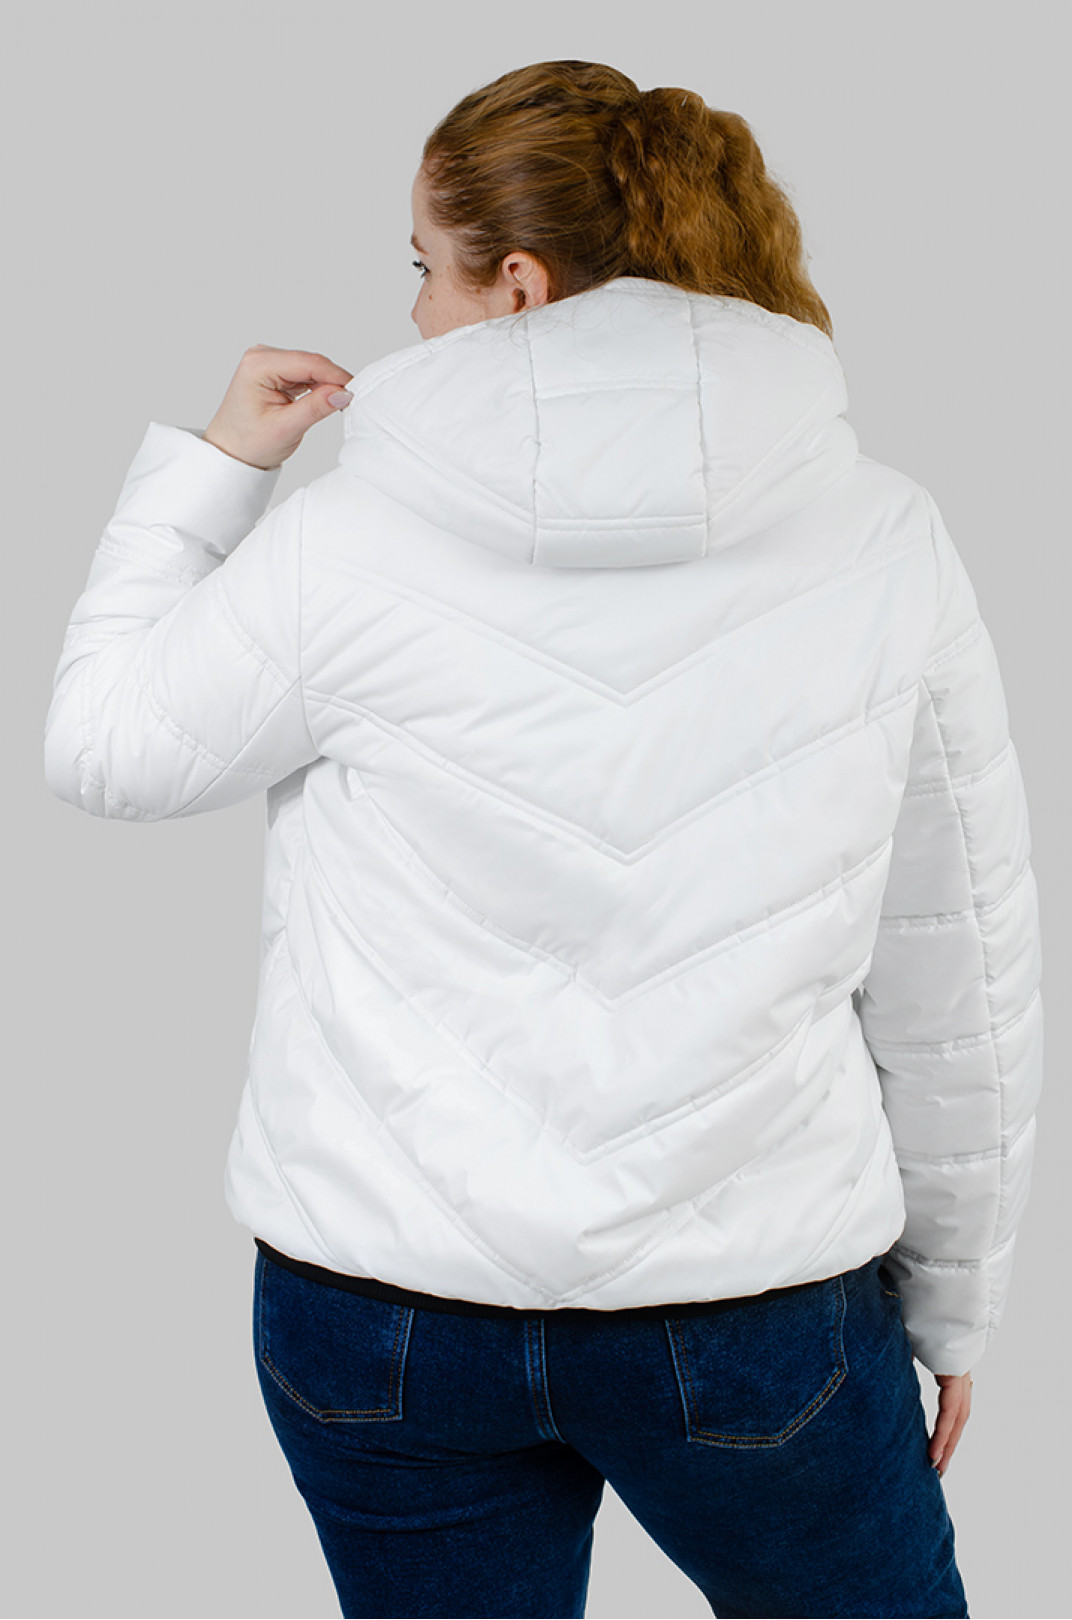 Куртка коротка біла великих розмірів